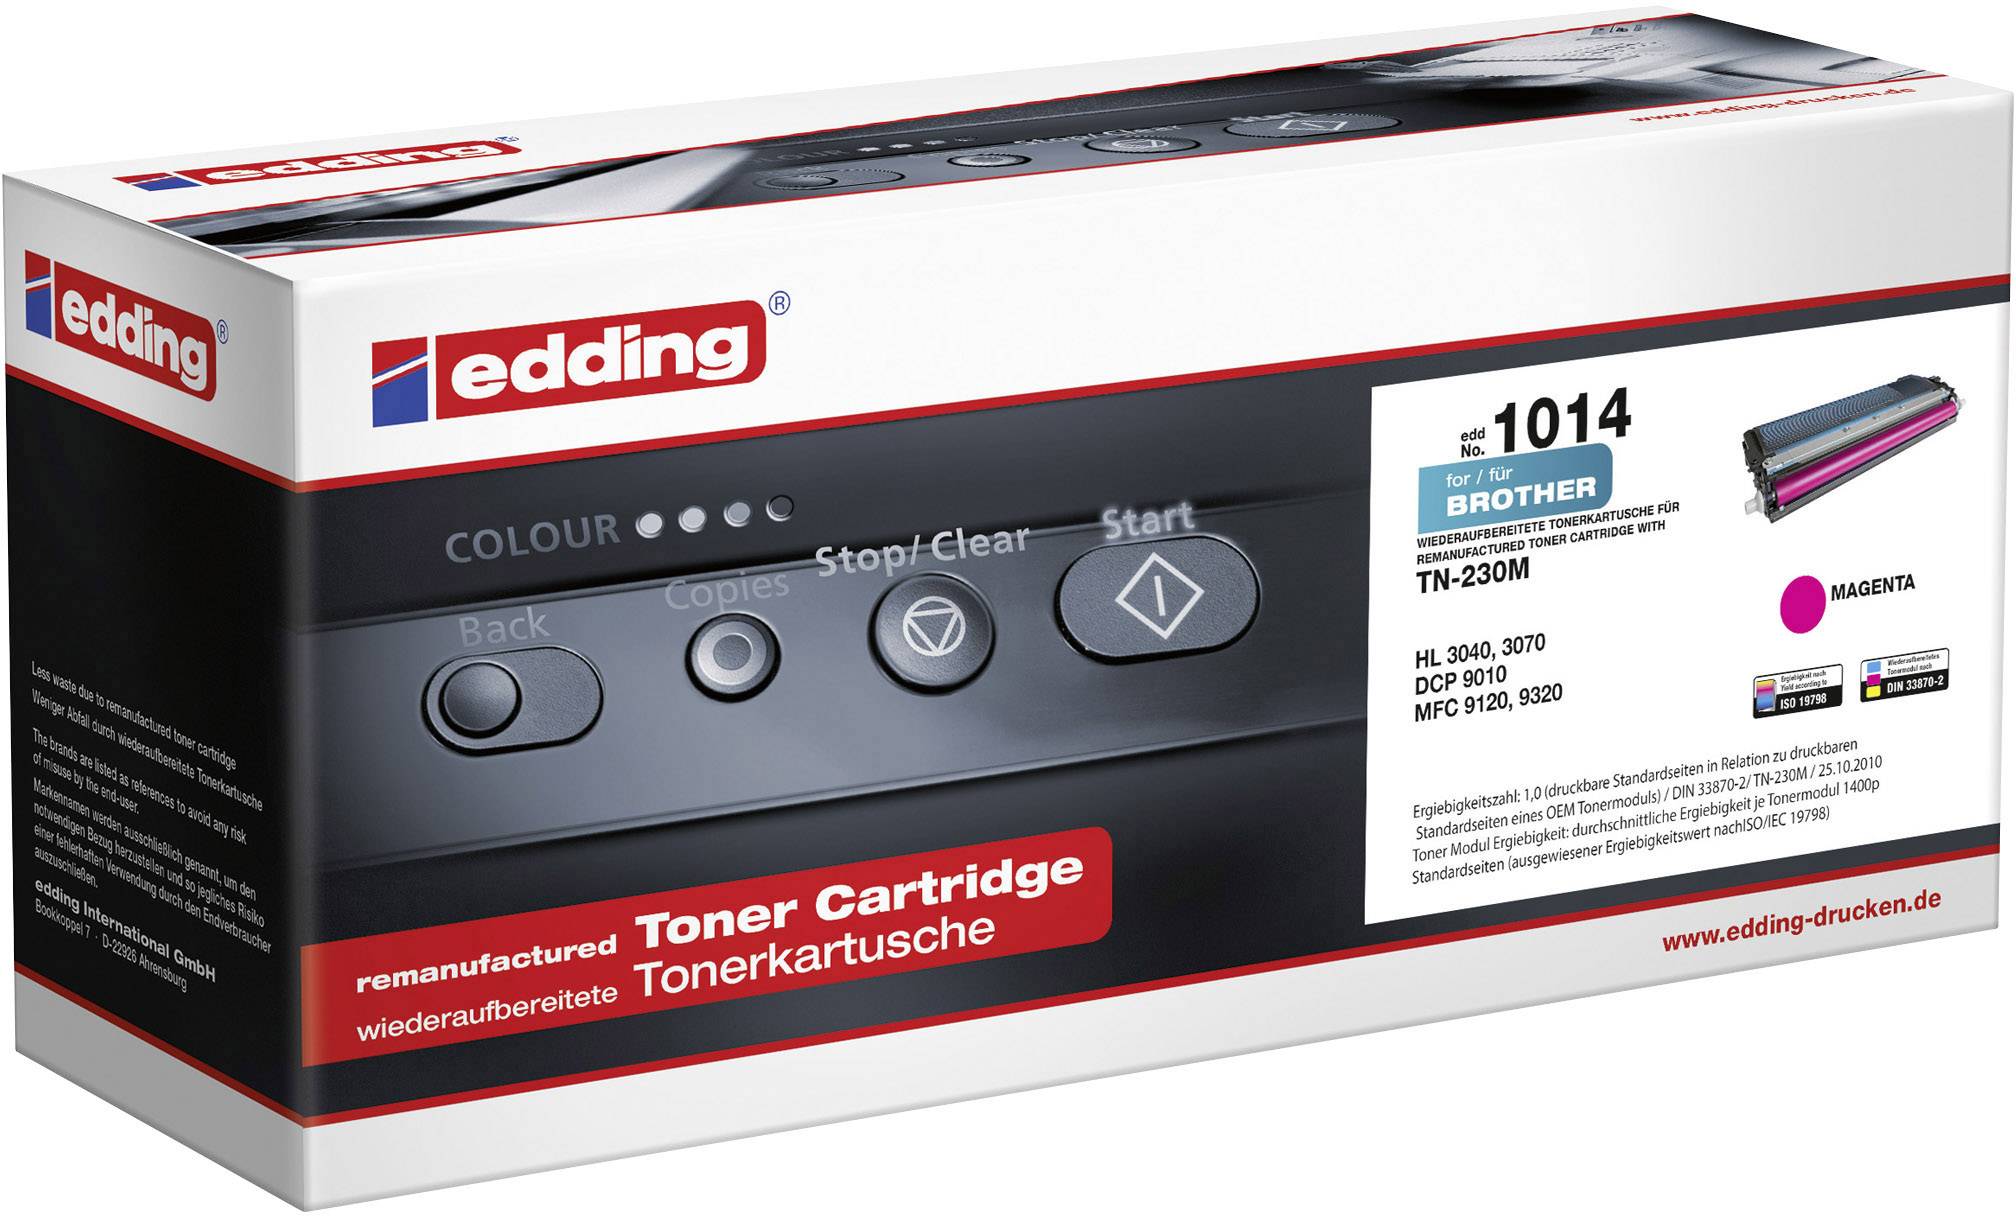 EDDING Toner ersetzt Brother TN-230M, TN230M Kompatibel Magenta 1400 Seiten edding 1014